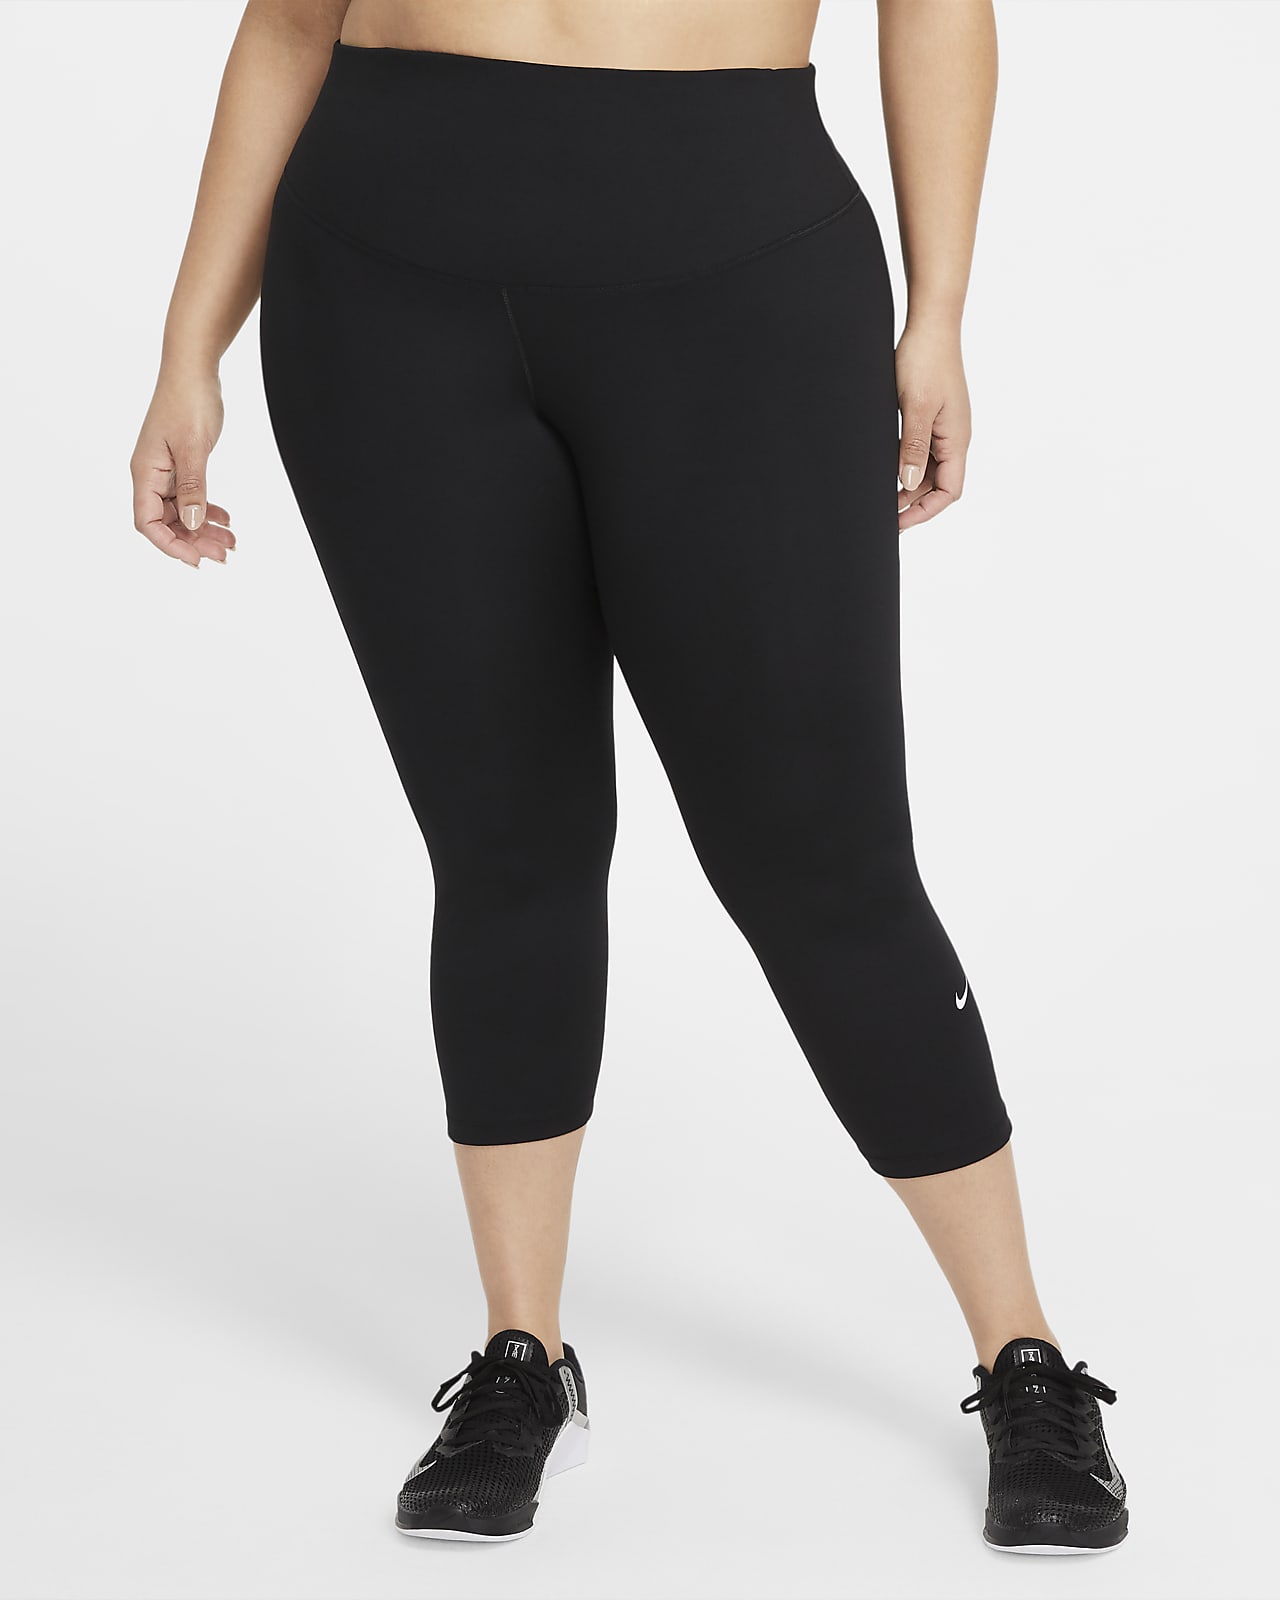 Tag væk en kop klamre sig Nike One Women's Mid-Rise Crop Leggings (Plus Size). Nike.com